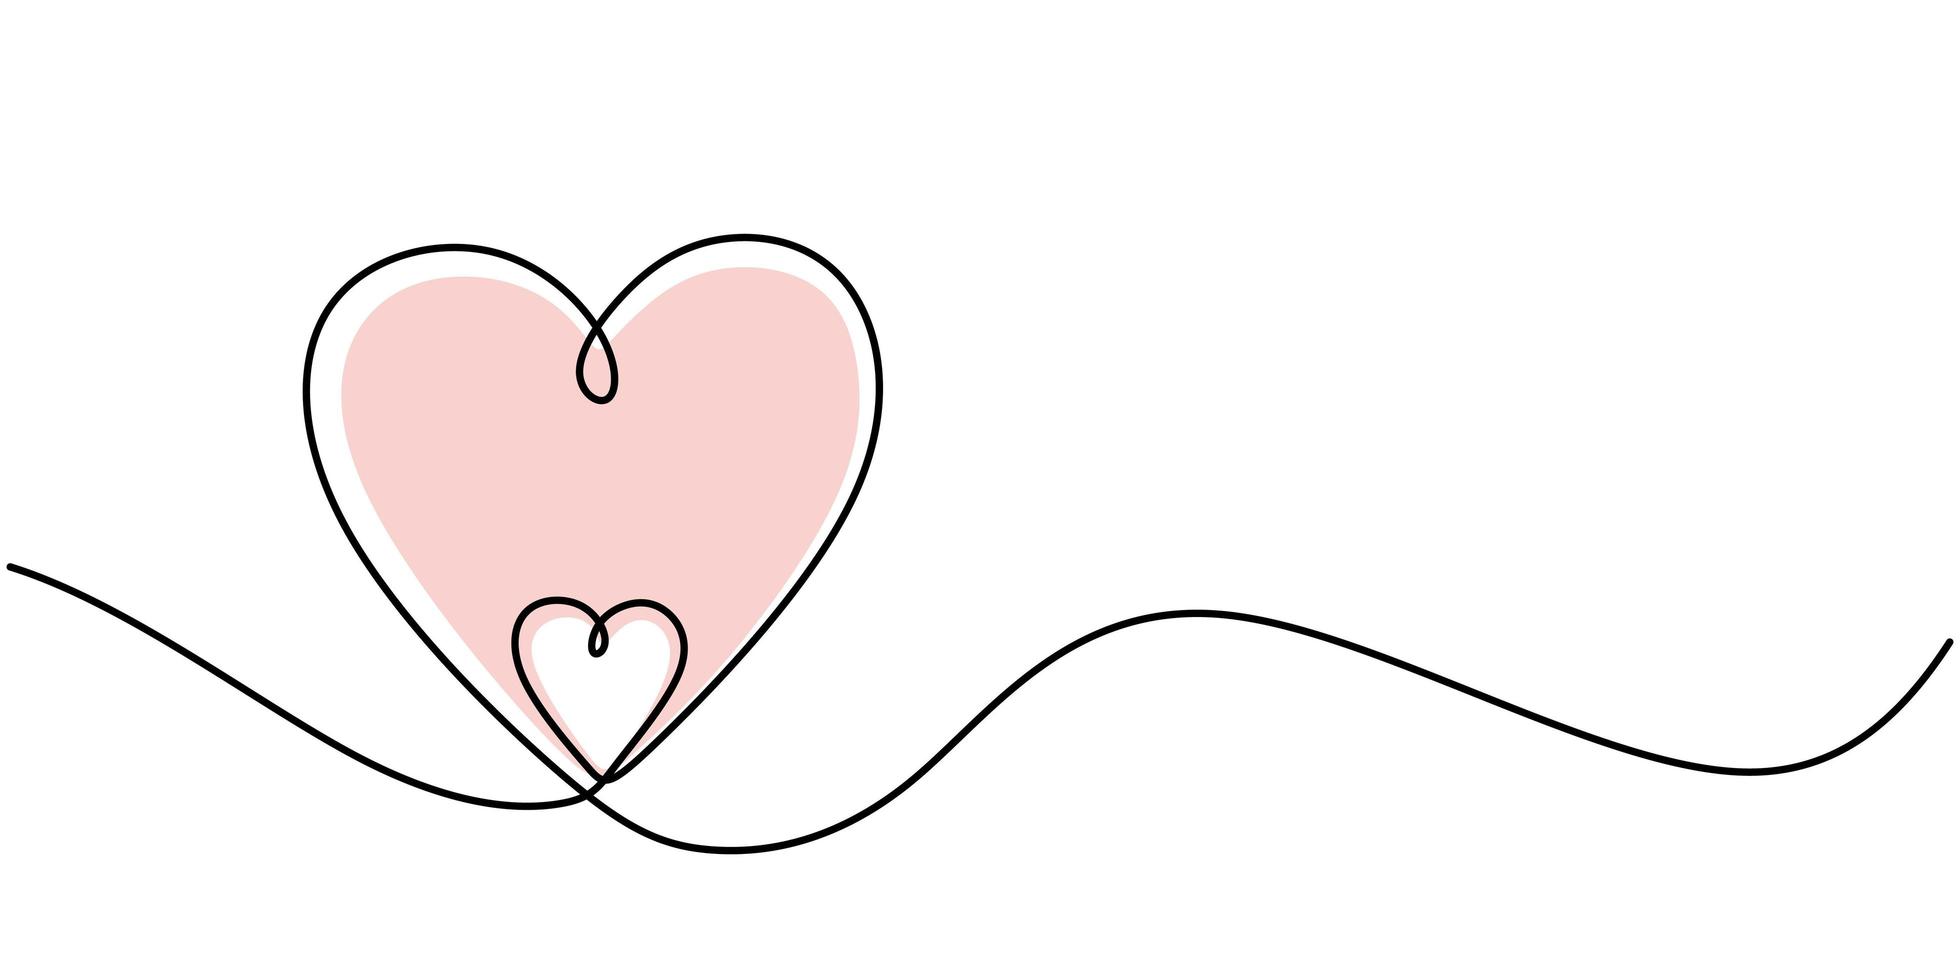 kontinuerlig linje ritning två hjärtan. minimalism kärlek symbol. en linje rita vektorillustration. bra för alla hjärtans gratulationskort vektor